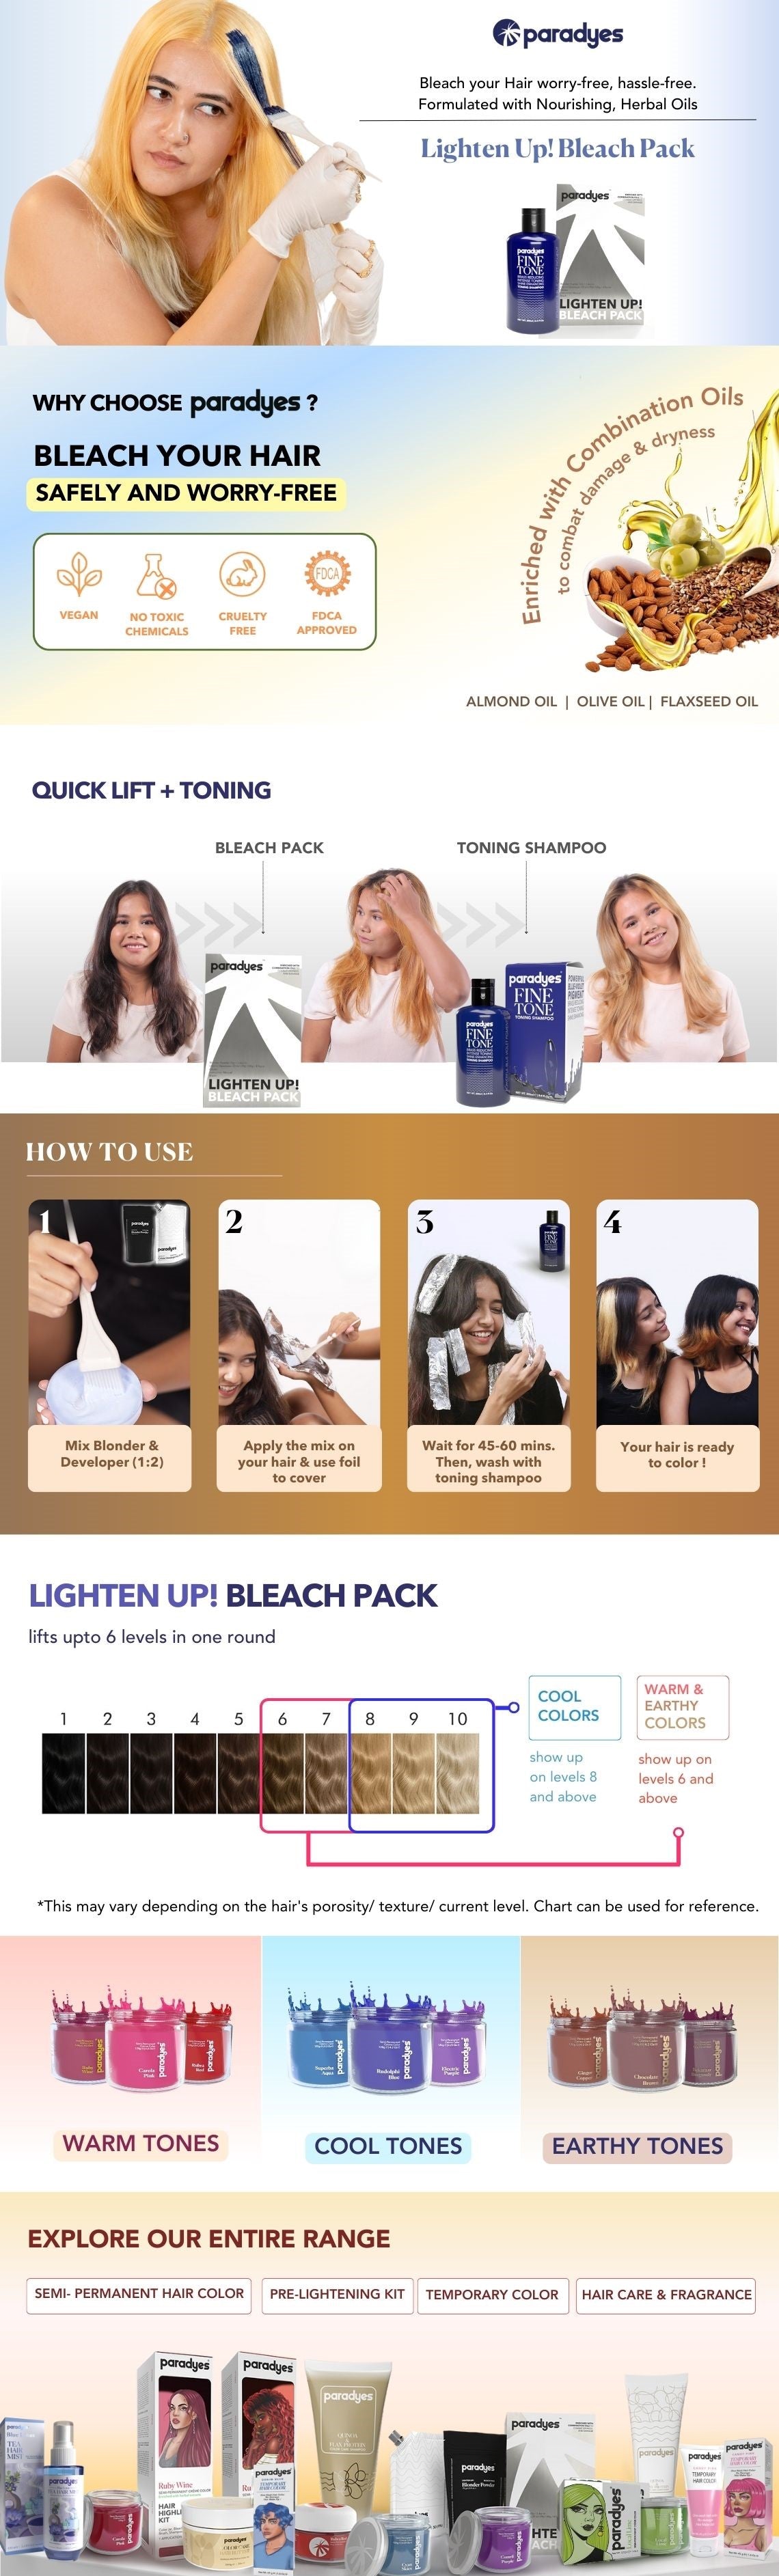 Lighten Up! Bleach Pack